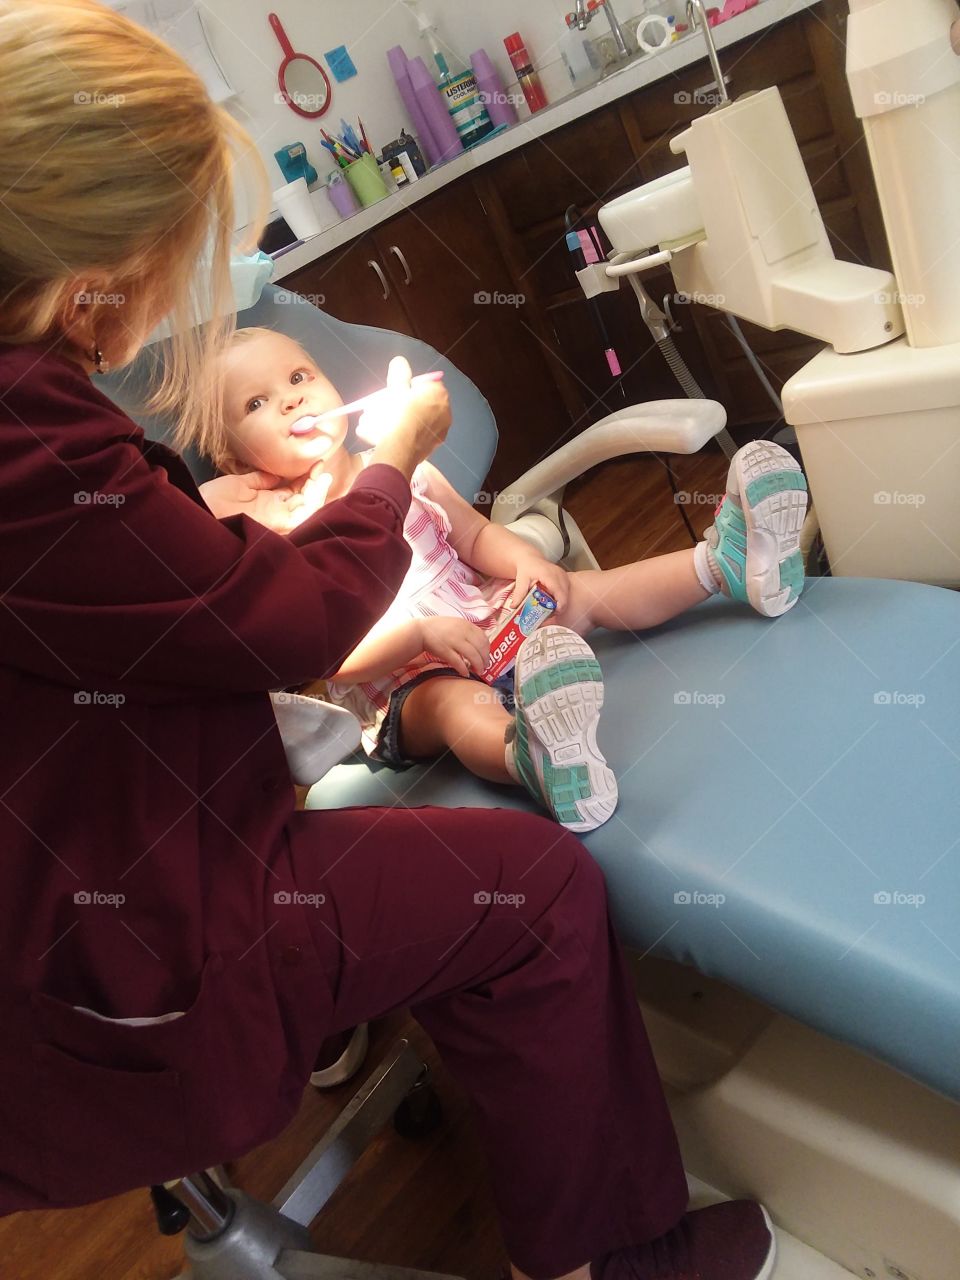 first dentist visit